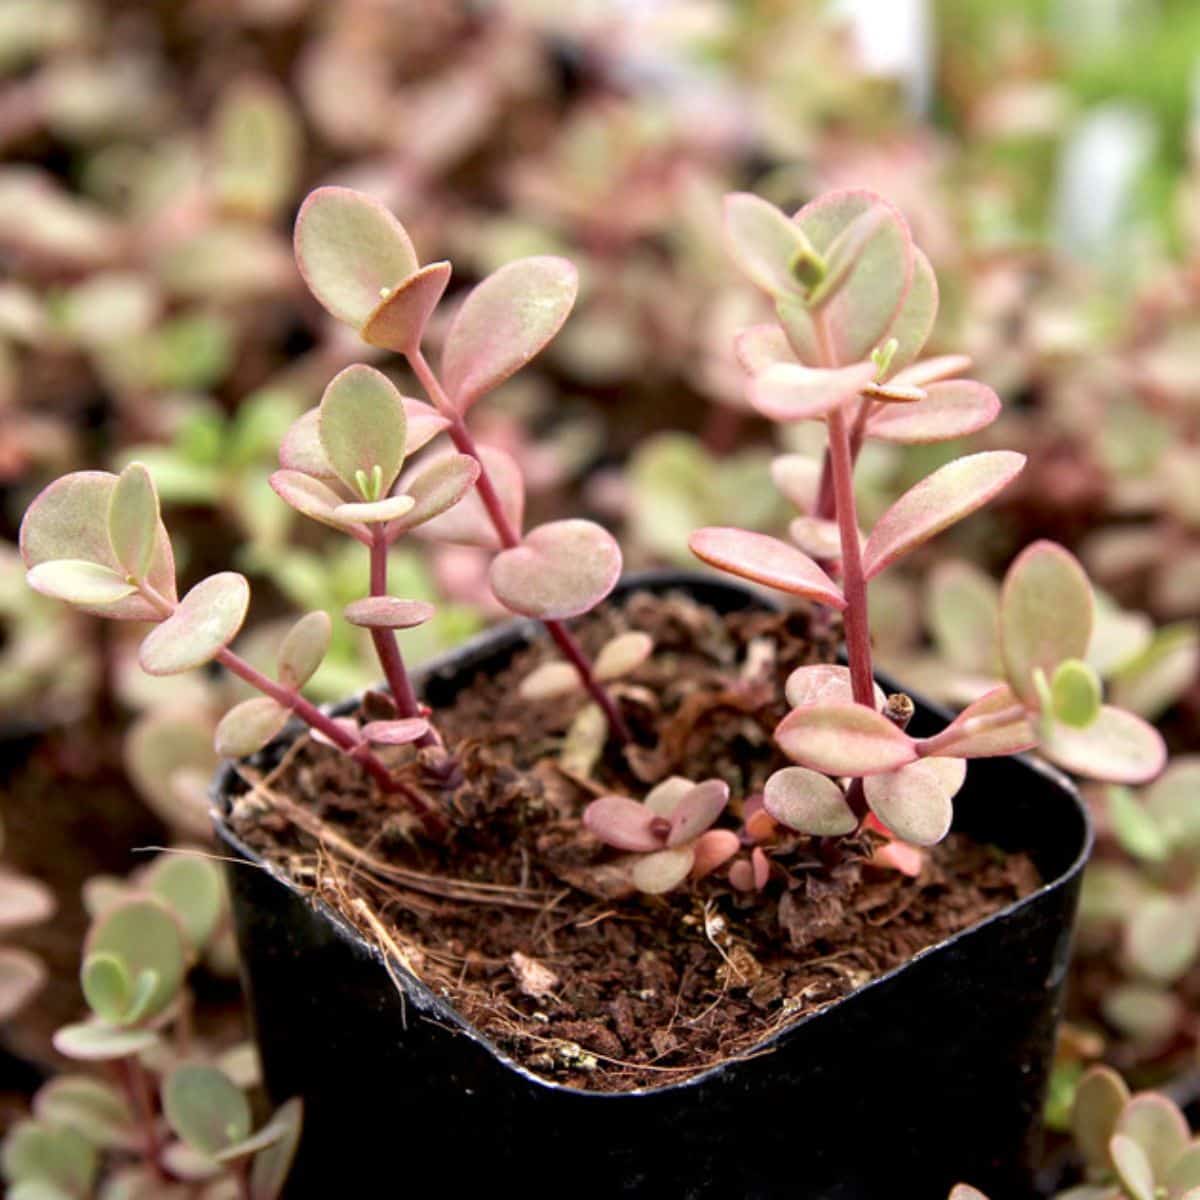 Sedum Sunsparkler ‘Firecracker’ growing in a pot.